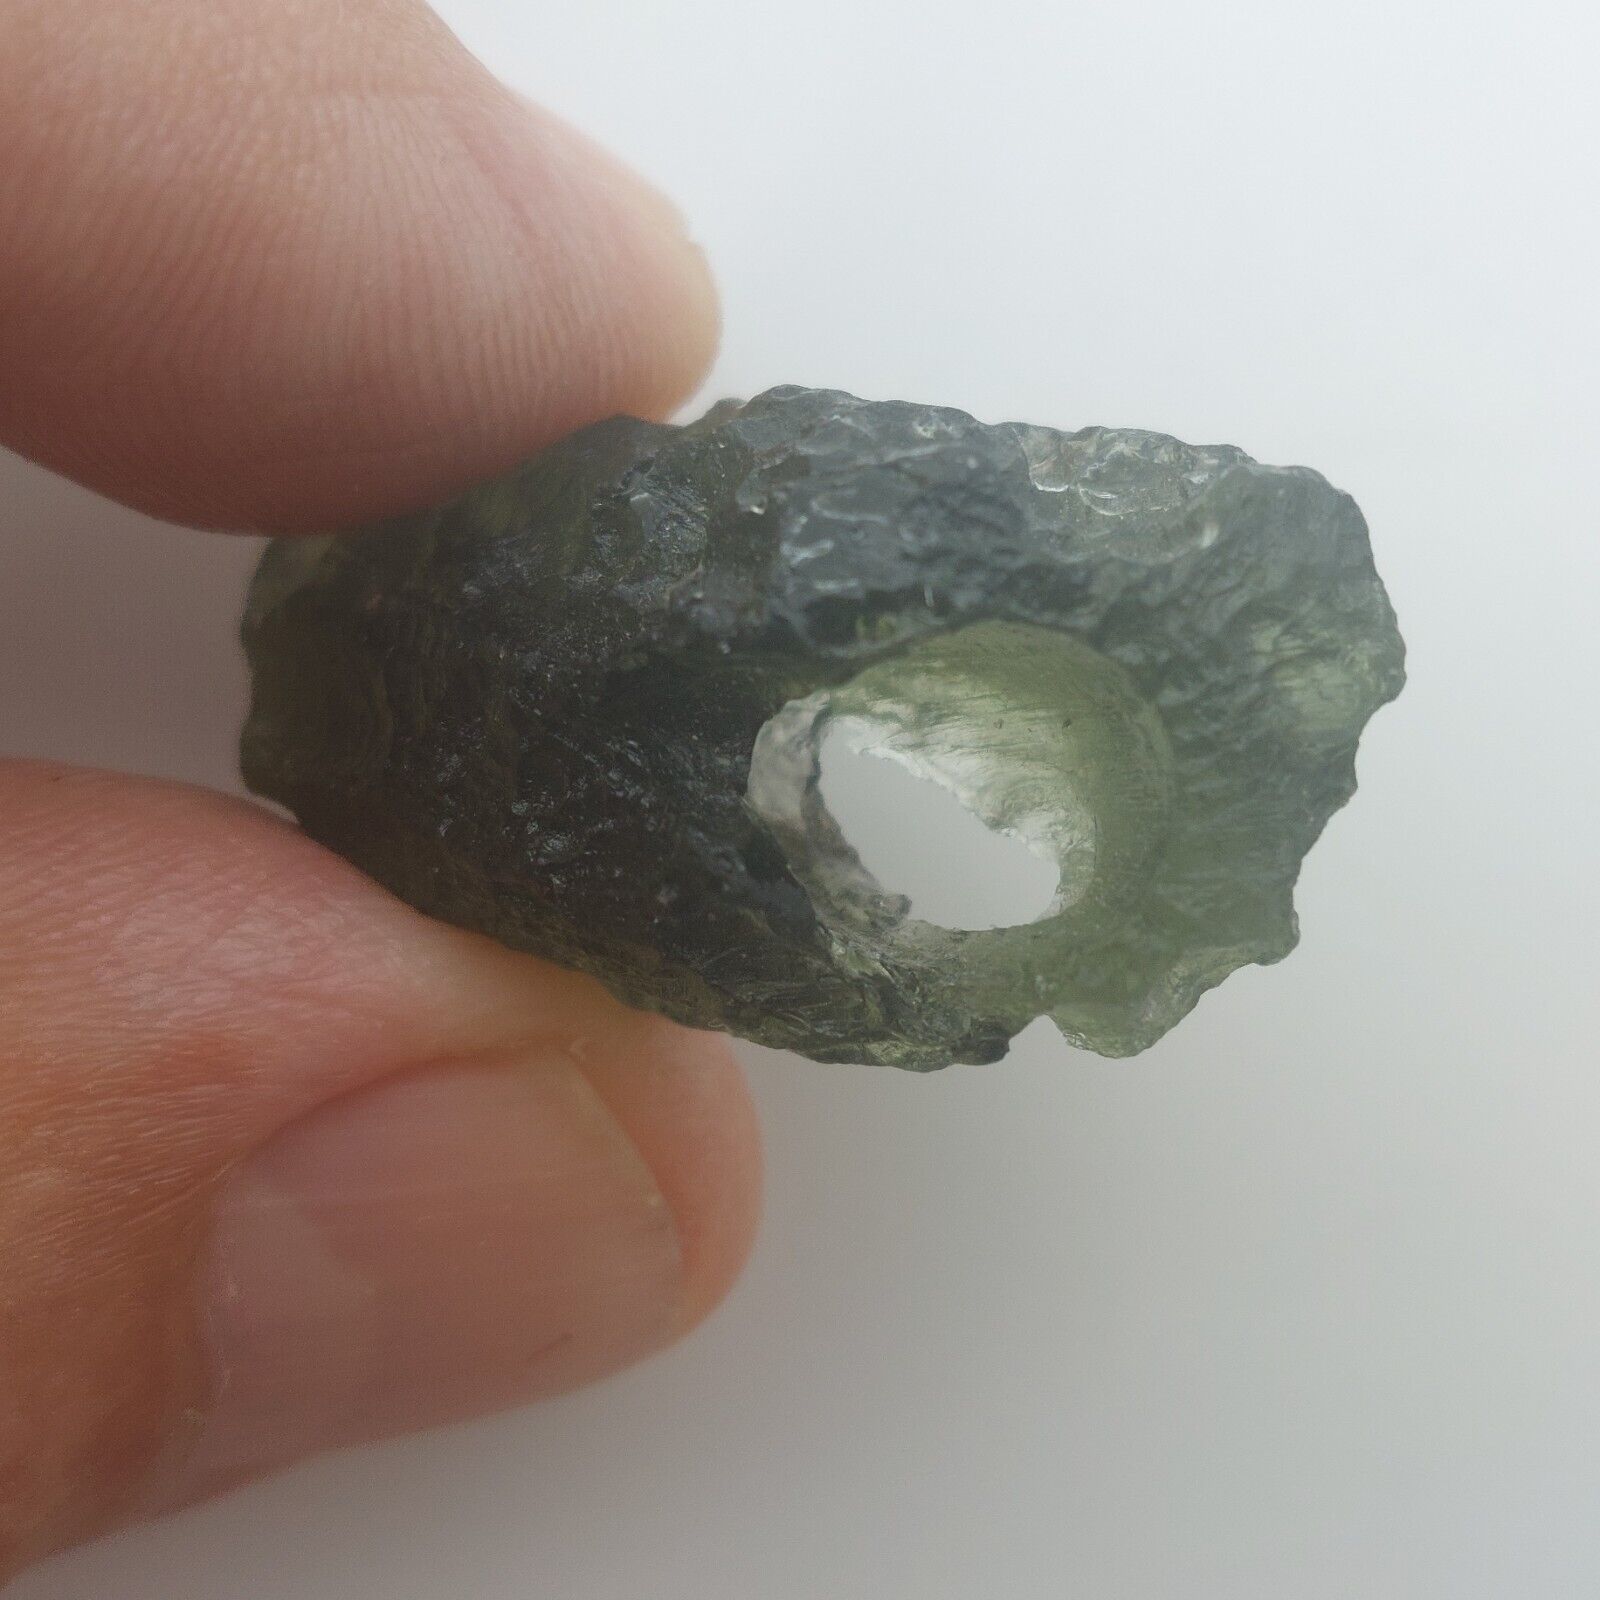 Moldavite Large Enclosed Hole - Unique Piece - 6.75gr/33.75ct COA included